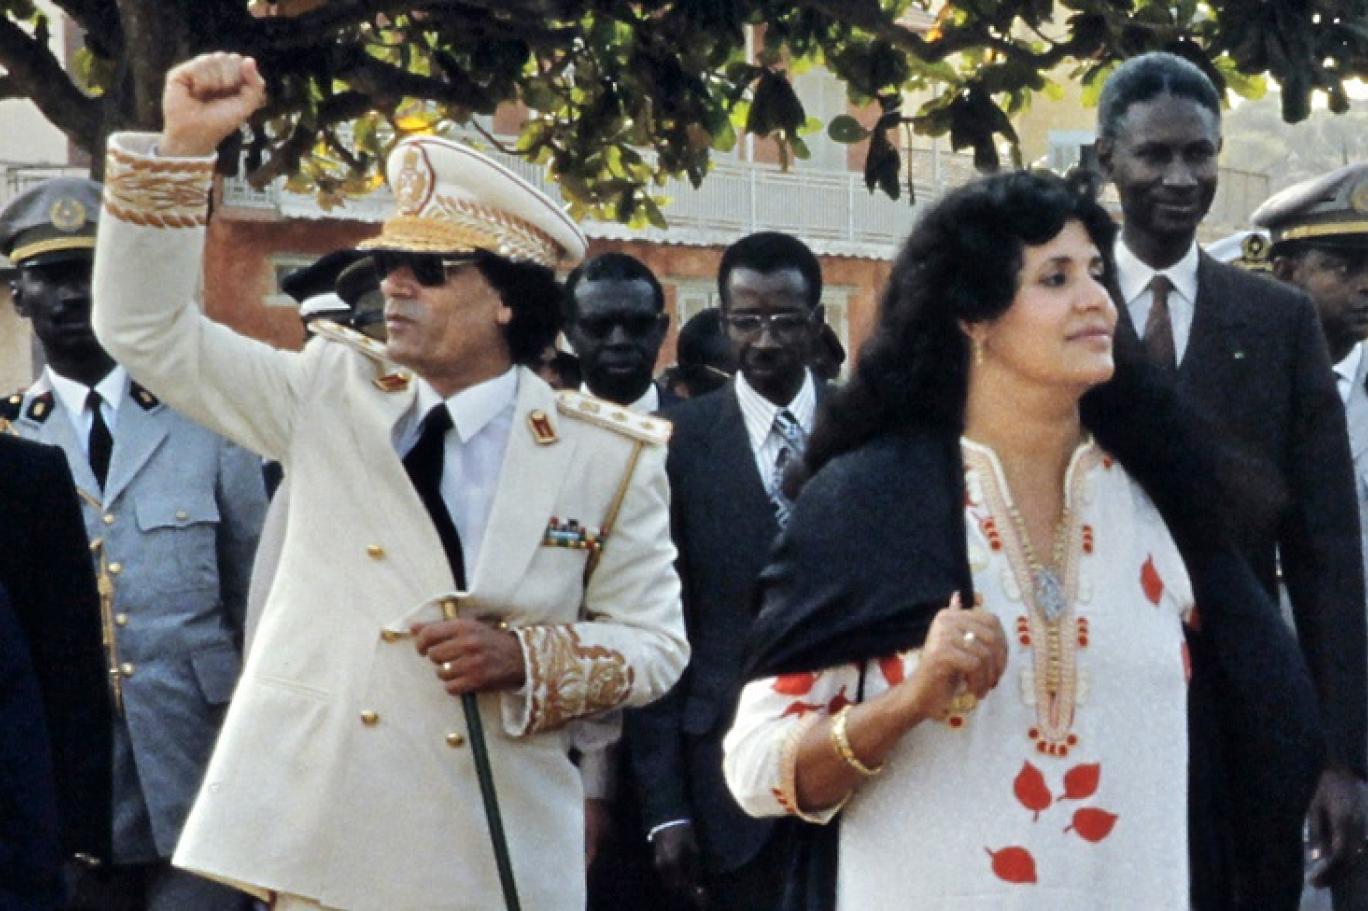 أرملة القذافي تطعن بقرار محكمة في مالطا بإعادة أموال إلى ليبيا